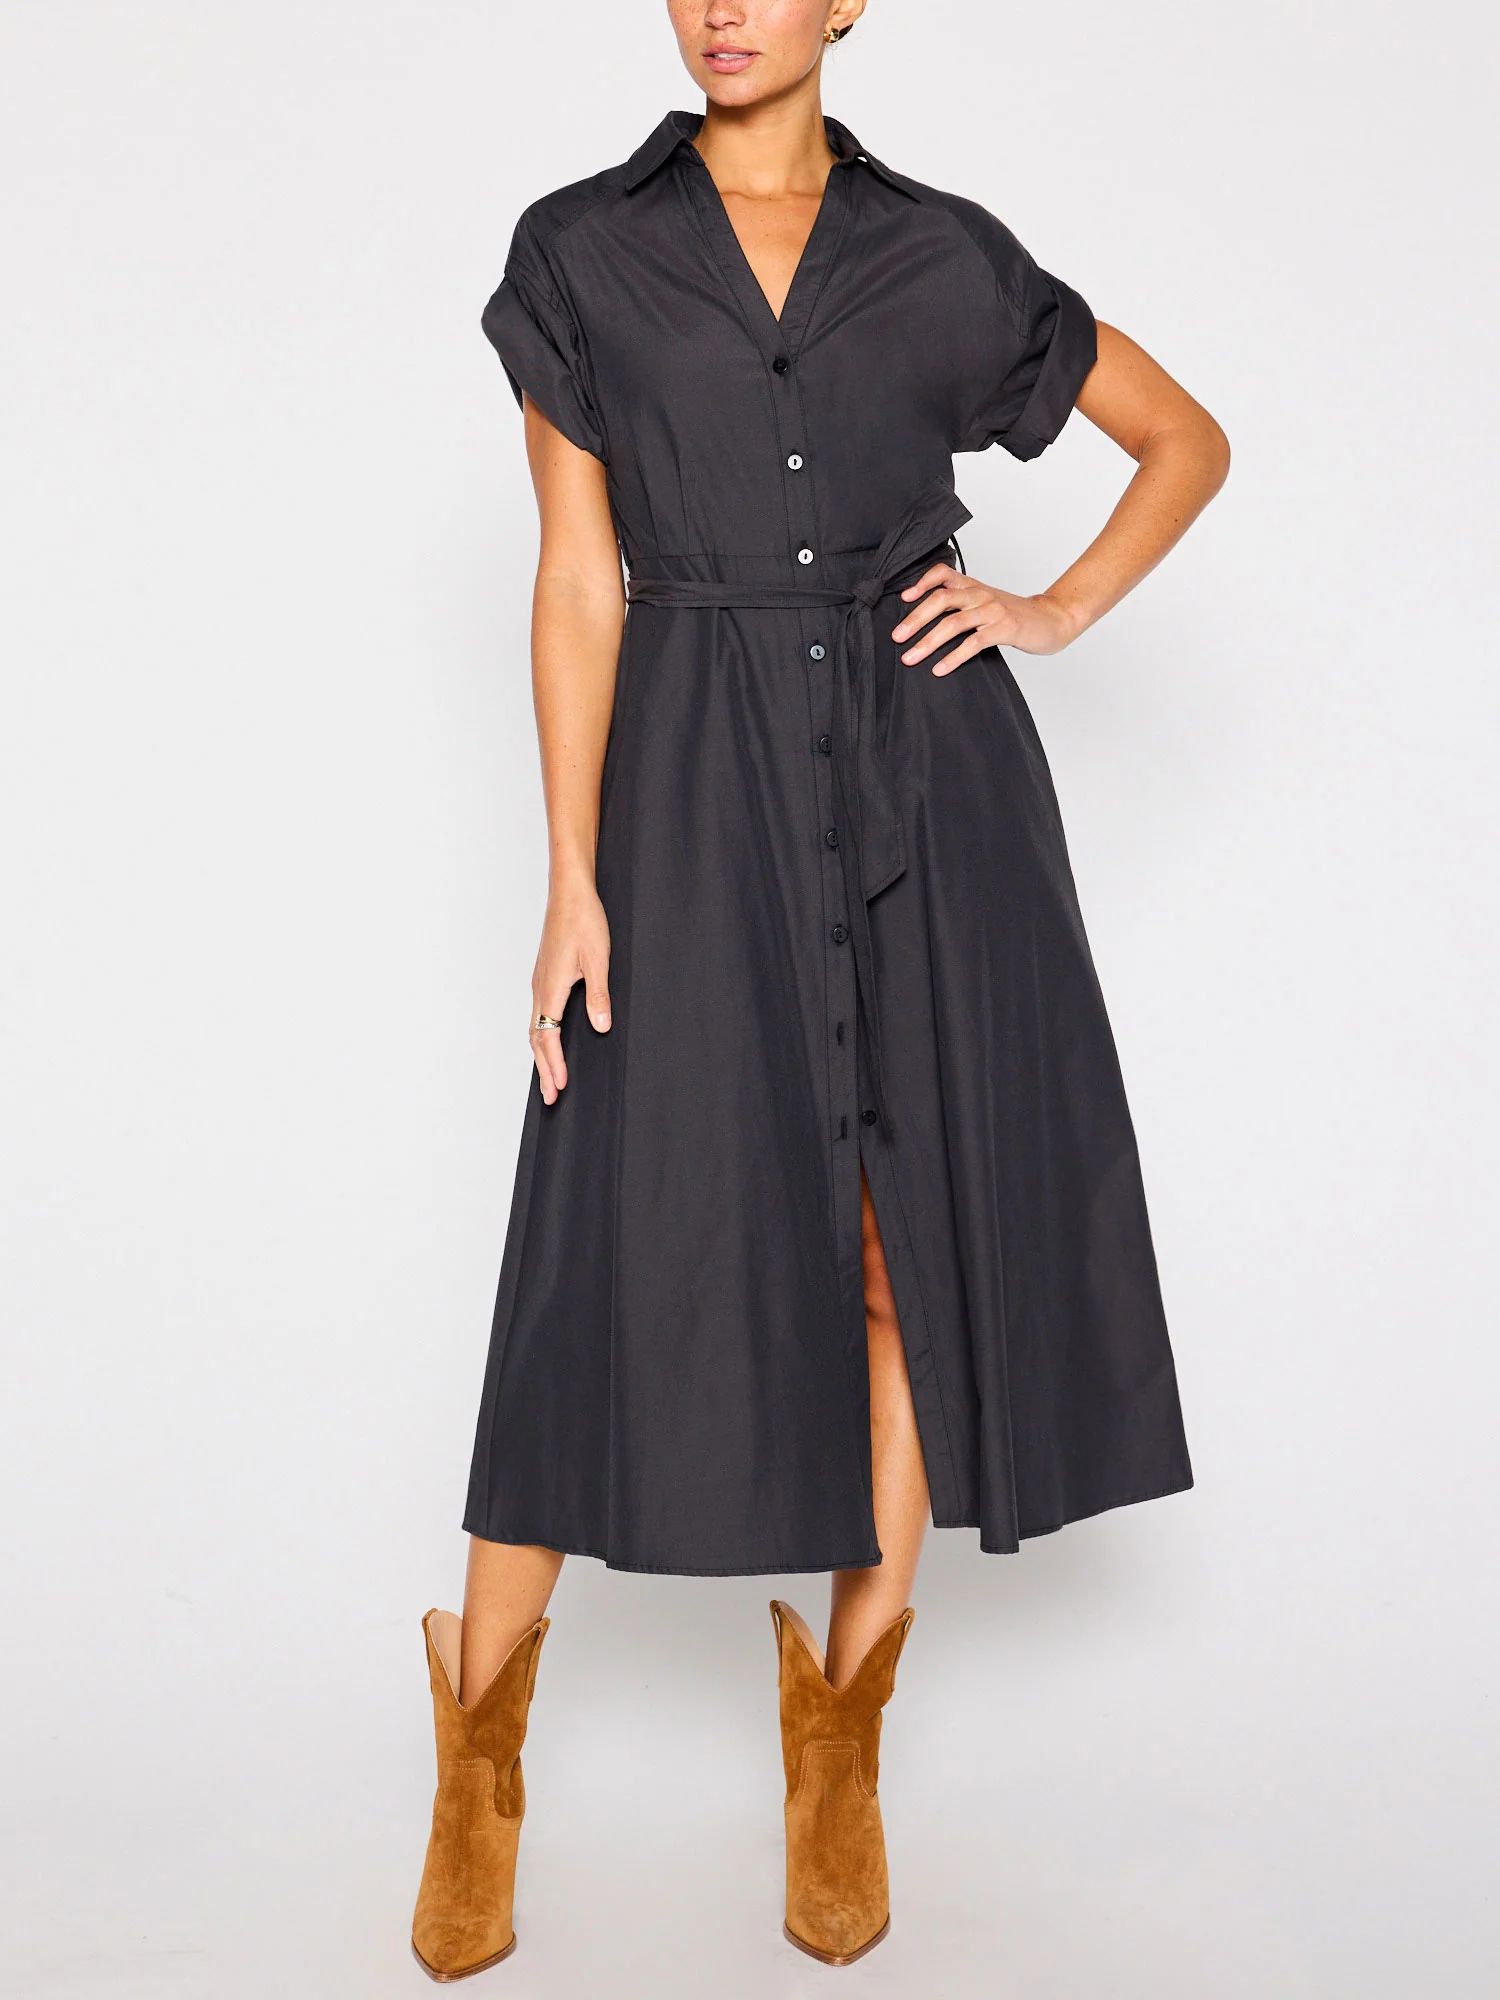 Brochu Walker | Women's Fia Belted Dress in Washed Black | Brochu Walker